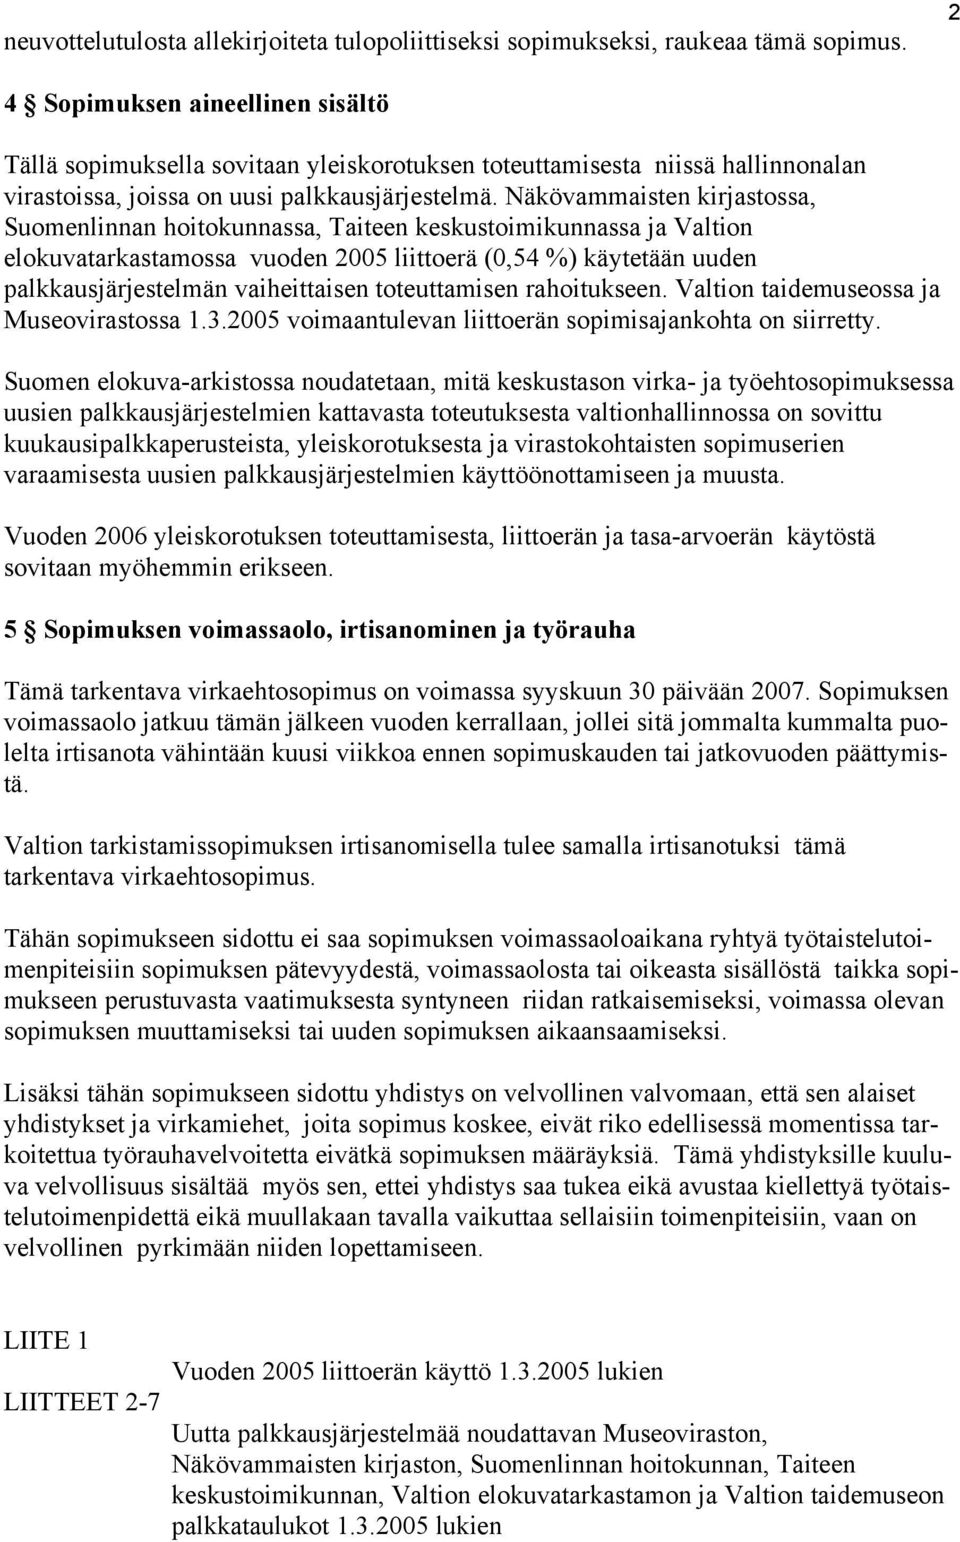 Näkövammaisten kirjastossa, Suomenlinnan hoitokunnassa, Taiteen keskustoimikunnassa ja Valtion elokuvatarkastamossa vuoden 2005 liittoerä (0,54 %) käytetään uuden palkkausjärjestelmän vaiheittaisen